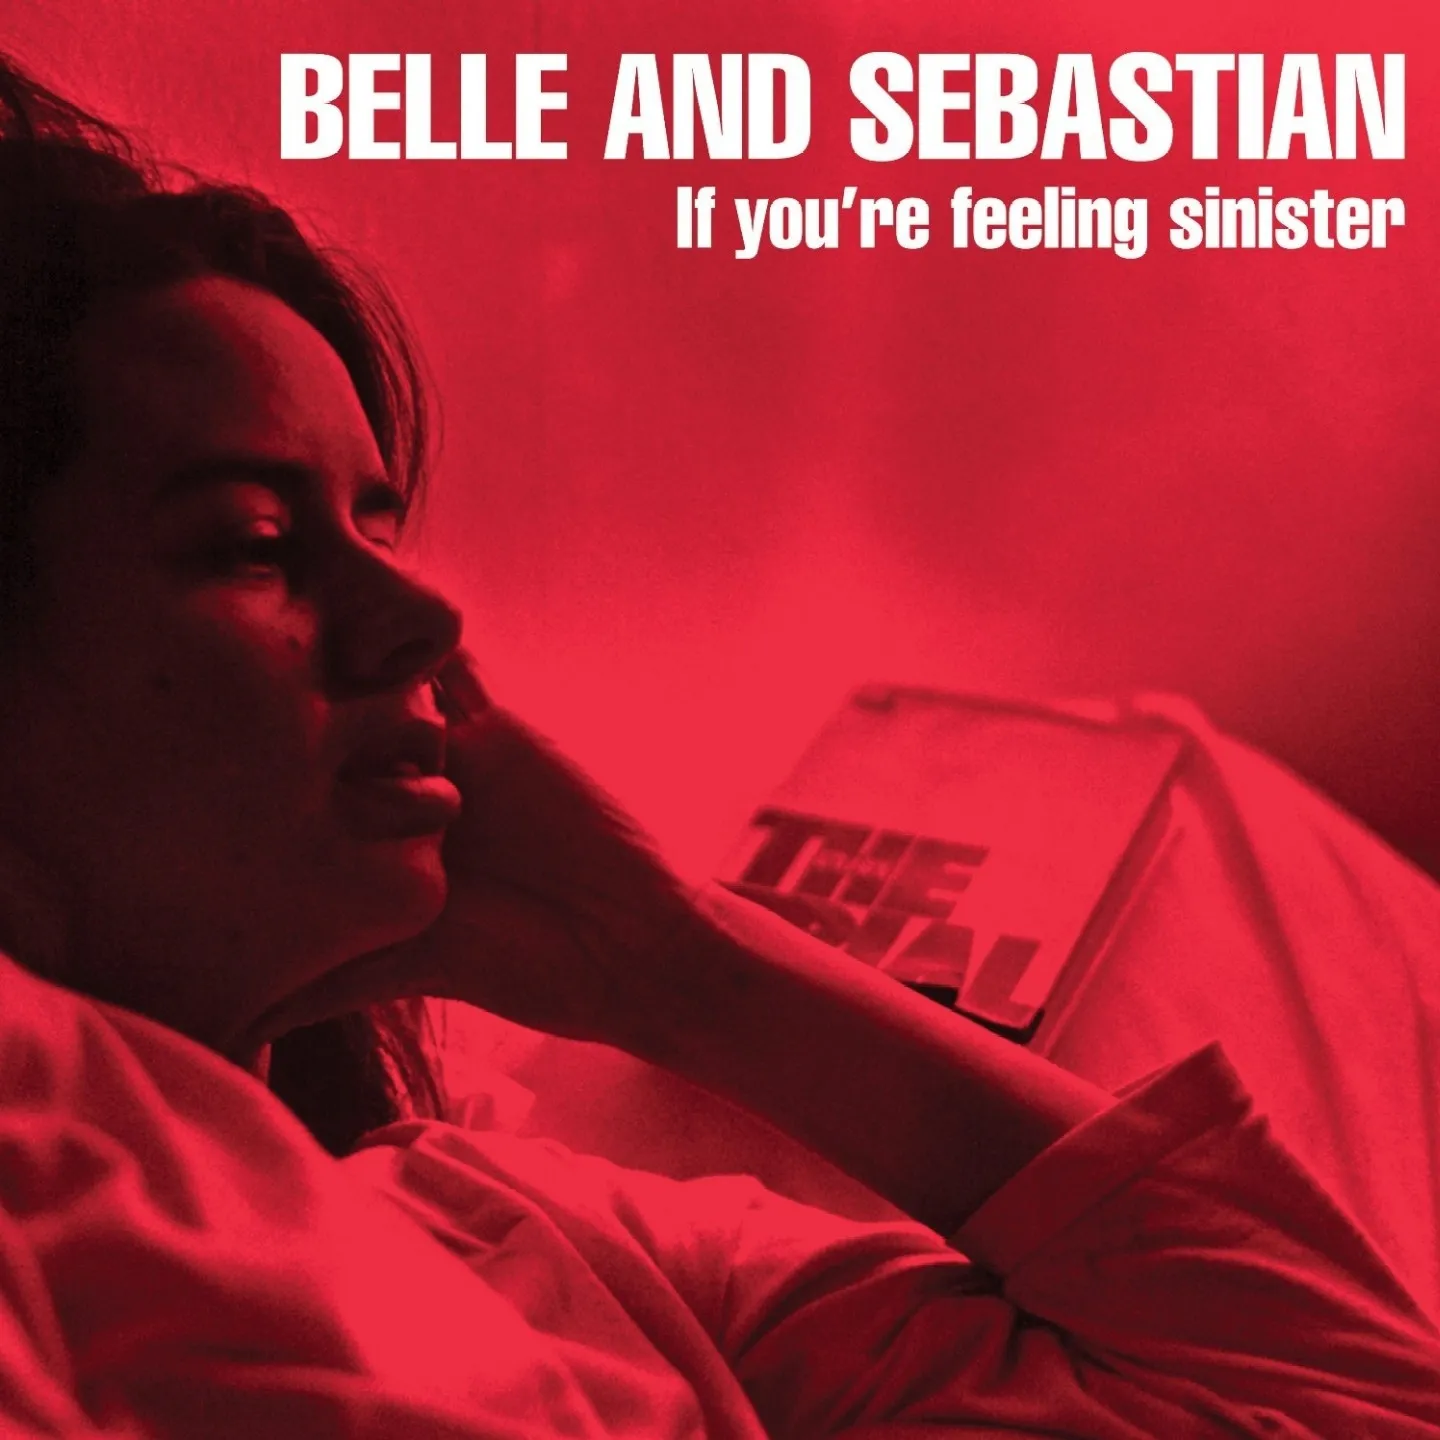 Belle and Sebastian - If You're Feeling Sinister artwork